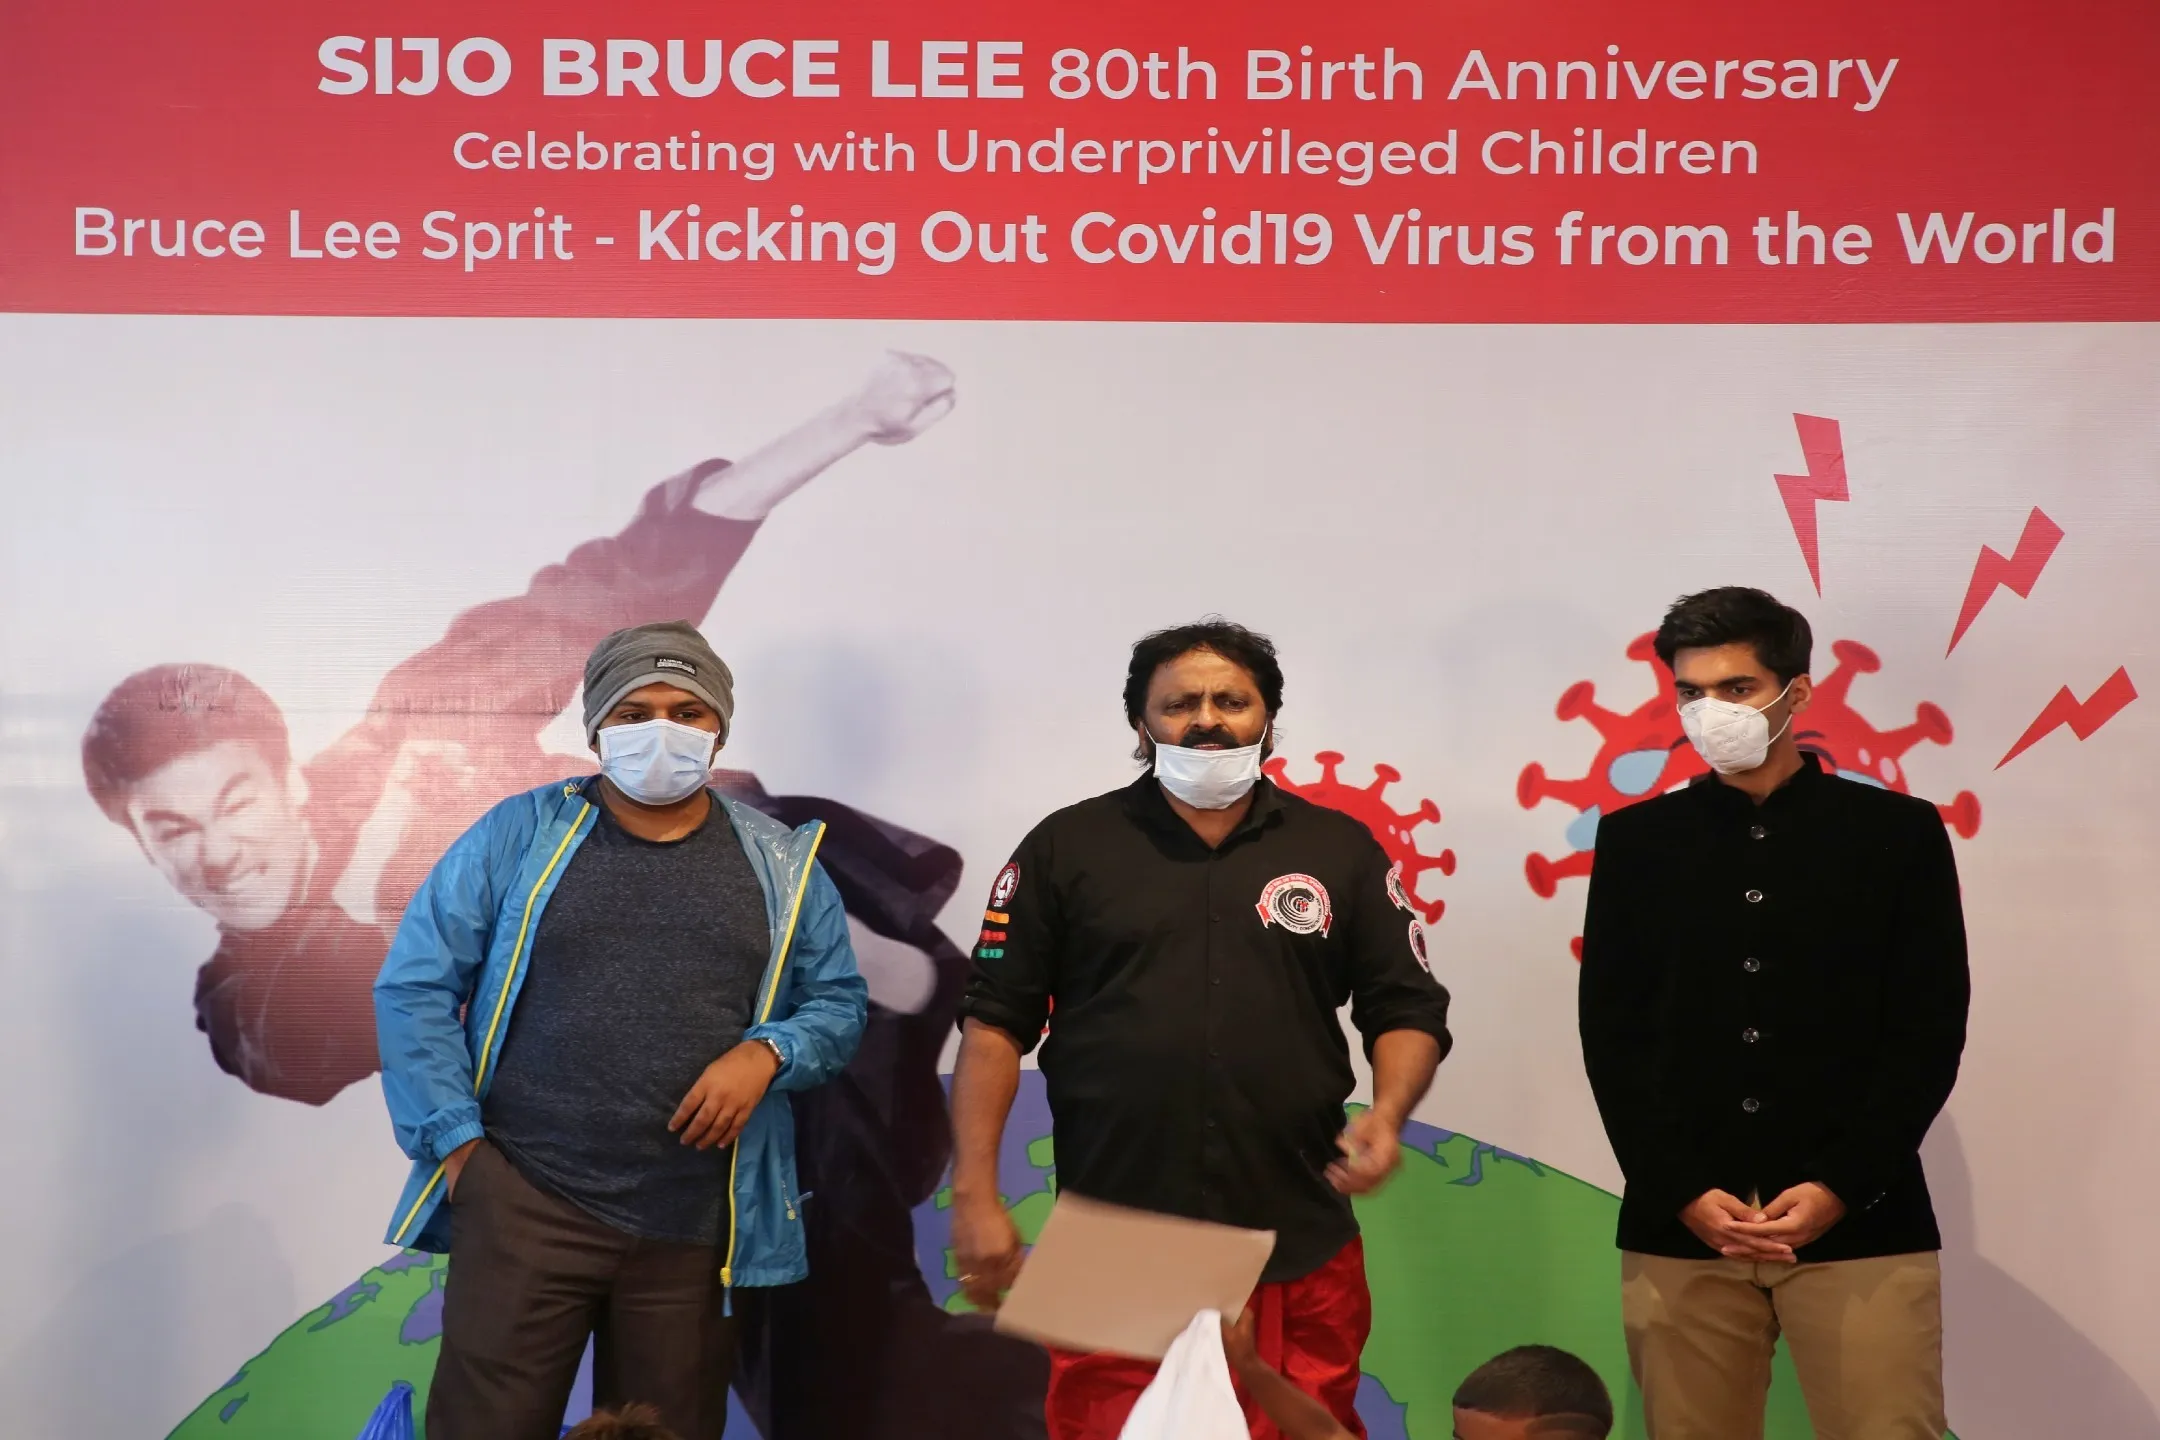 ब्रूस ली के 80 वें जन्मदिन पर चीता यज्ञेश ने ब्रूस ली स्प्रीट से करोना वायरस को दुनिया से बाहर भगाते हुए पोस्टर का विमोचन किया